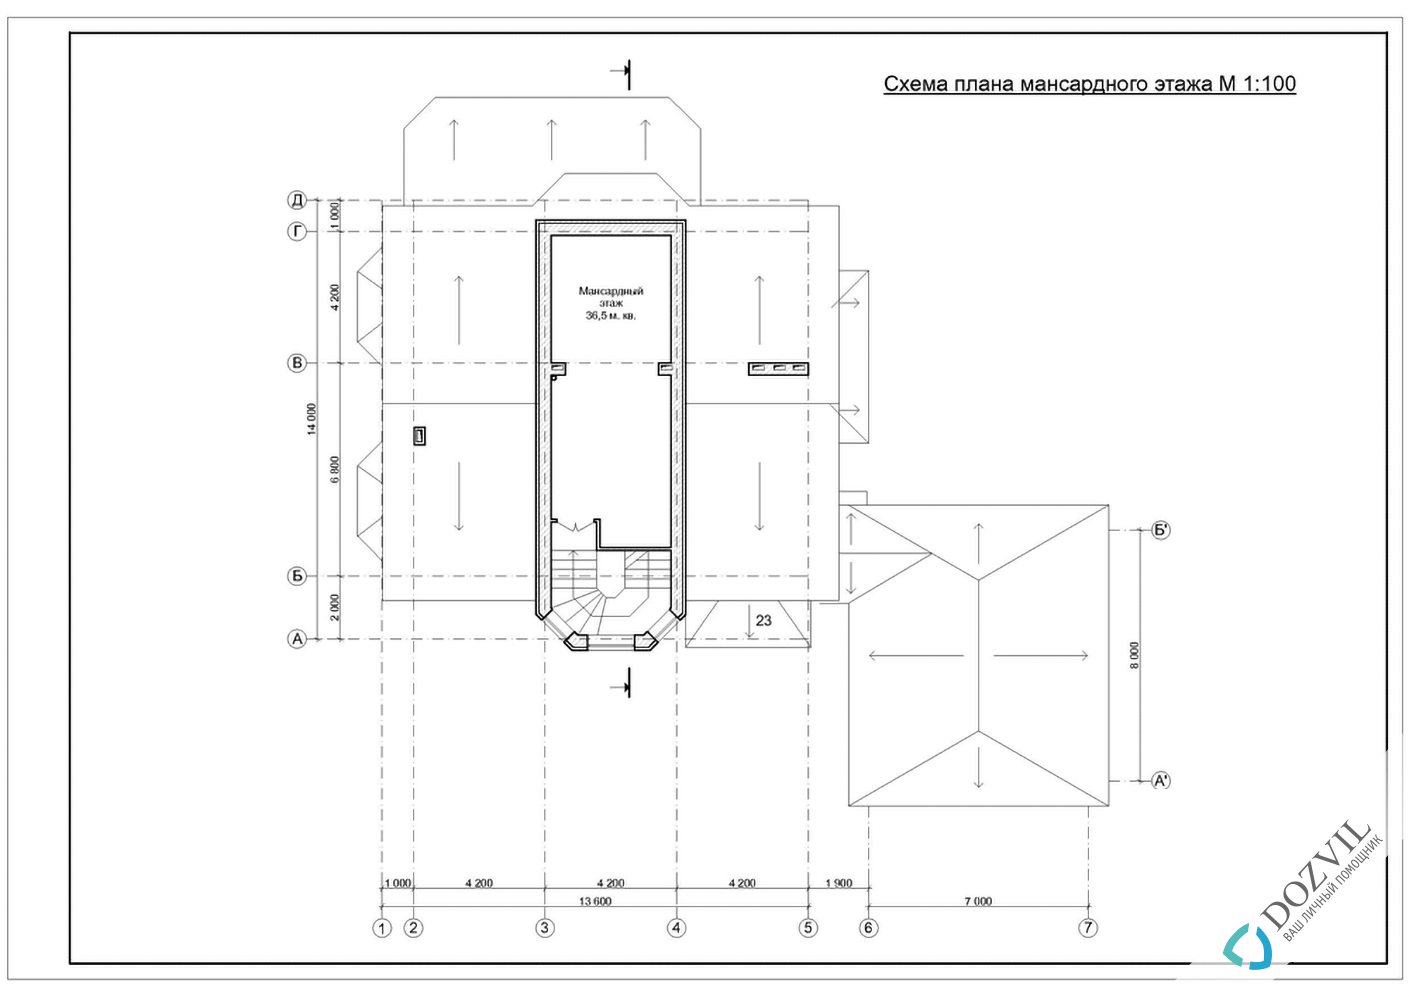 Узаконить реконструкцию > Реконструкция дома с общей площадью до 500 квадратных метров > 2 этап - Разработка эскиза намерений строительства